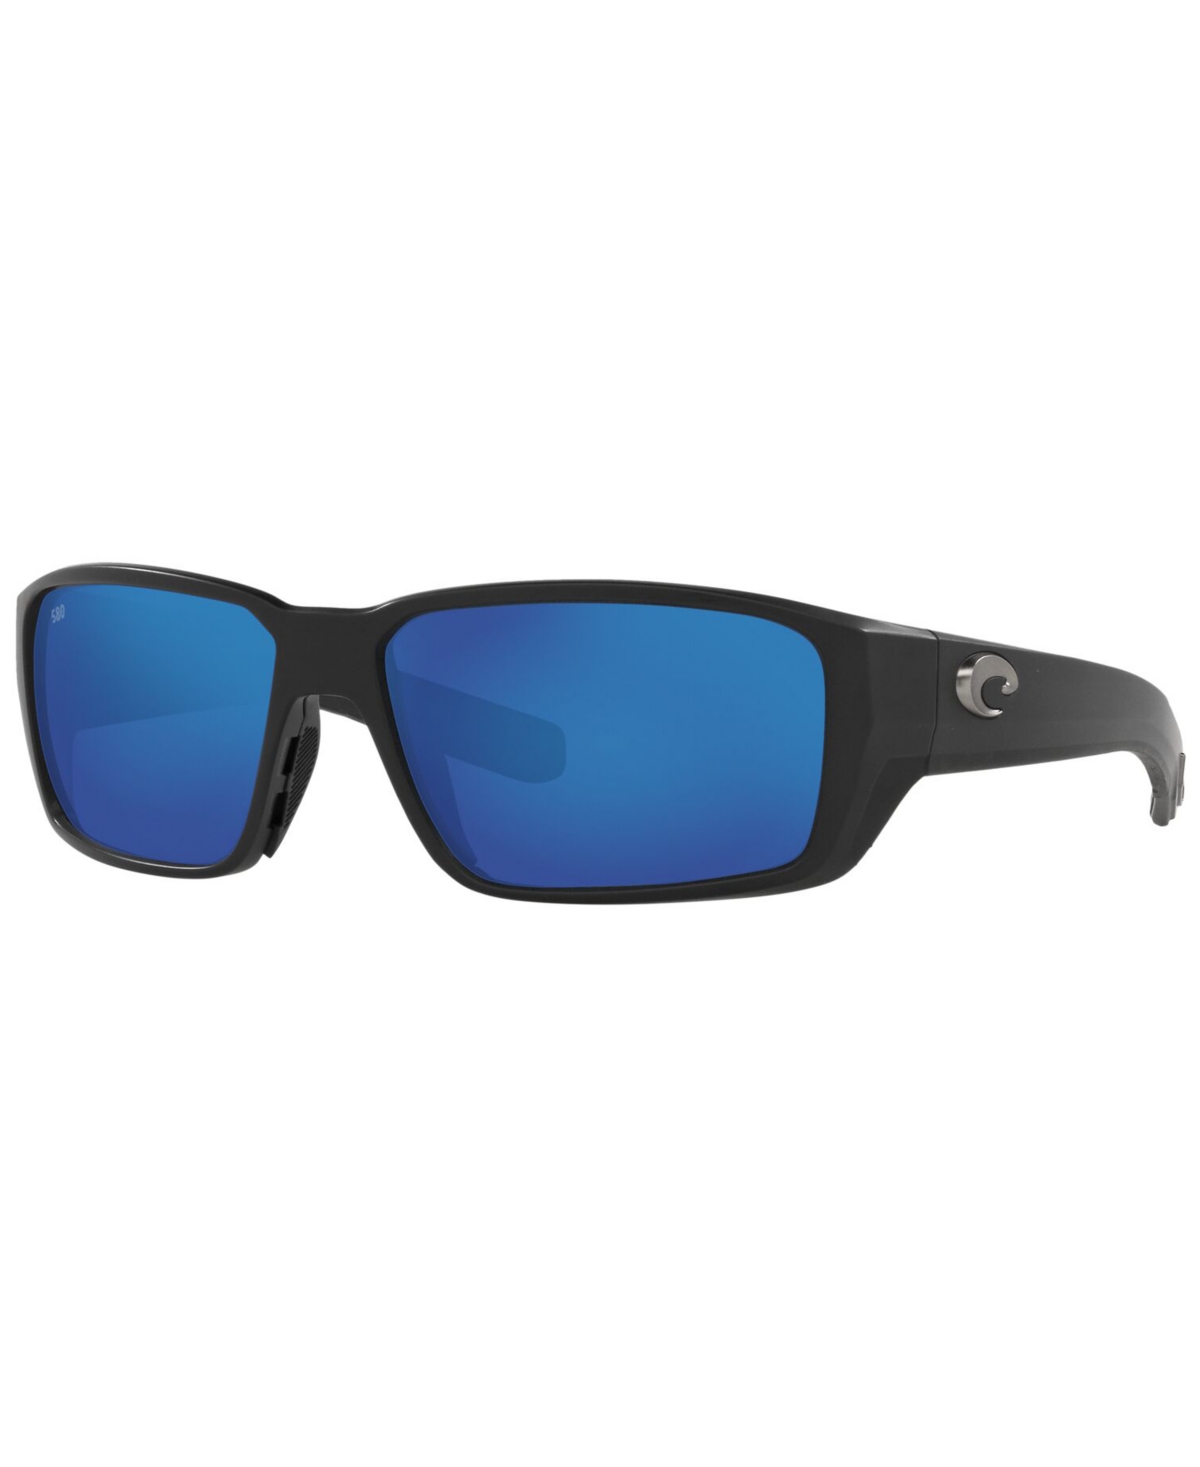 Costa Del Mar Polarized Blackfin Pro Sunglasses, 6s9078 60 In Matte Black,blue Mirror G